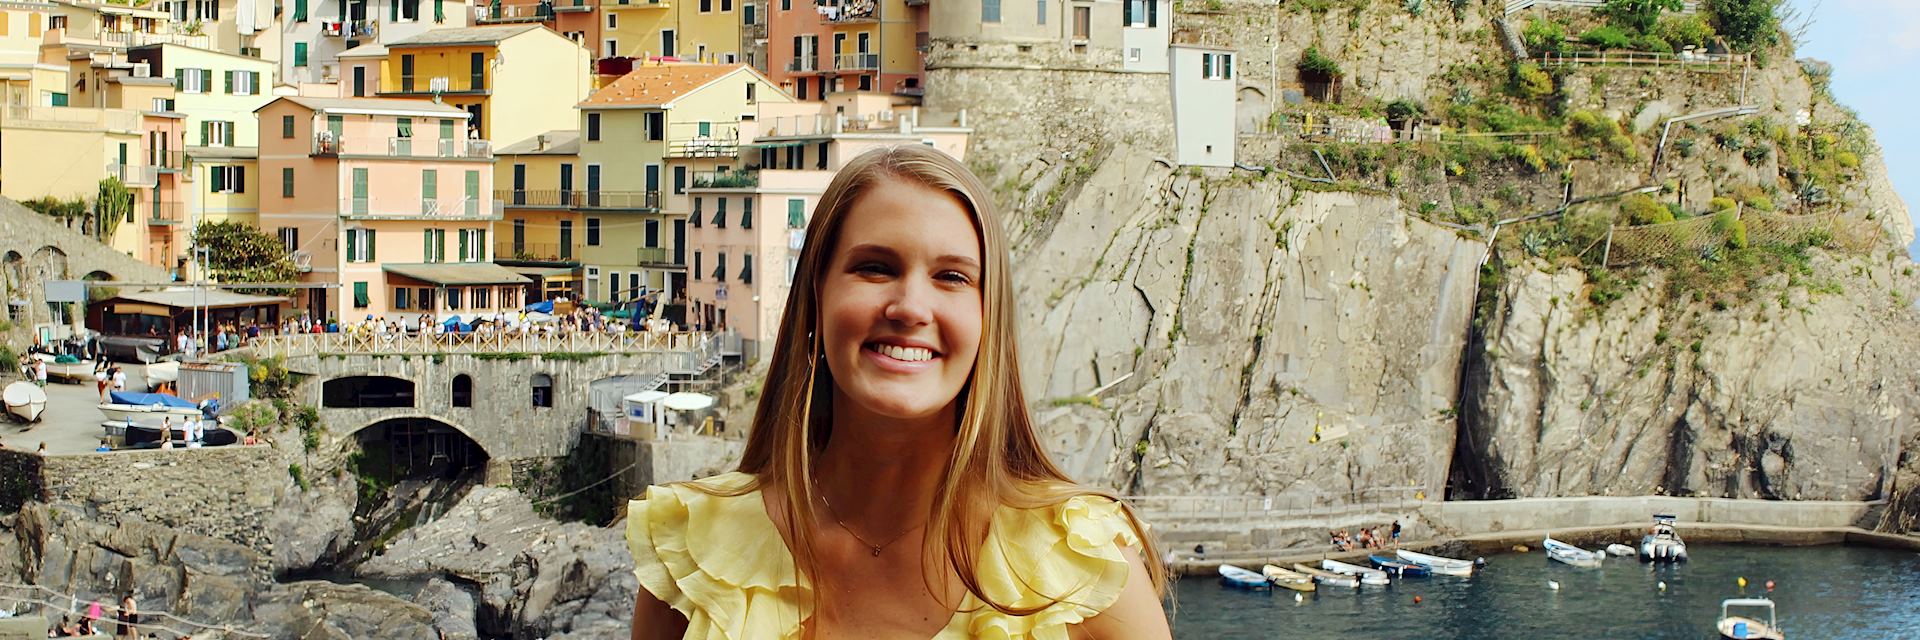 Kelly in Cinque Terre, Italy